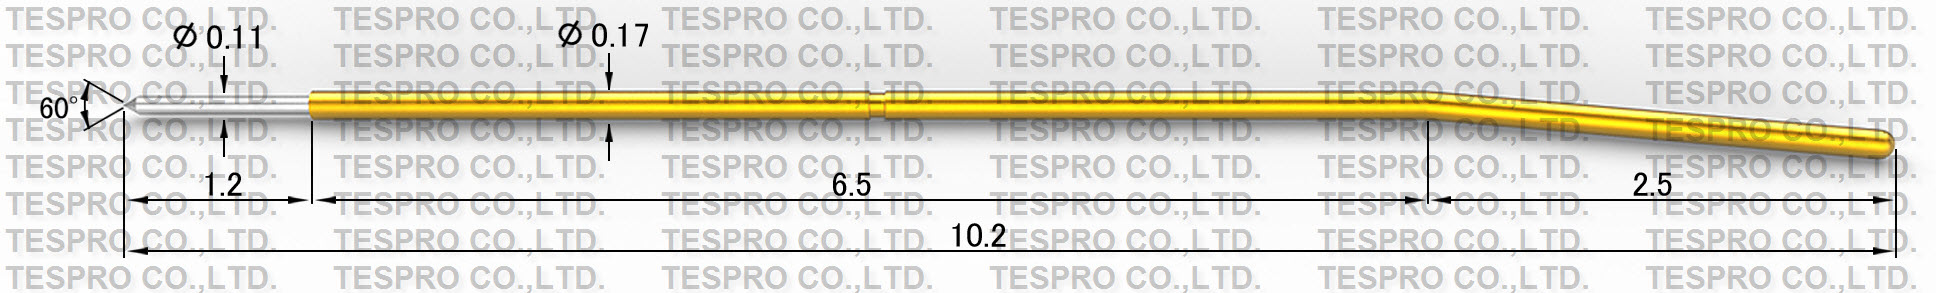 http://tespro-jp.com/product/p-0.17.jpg